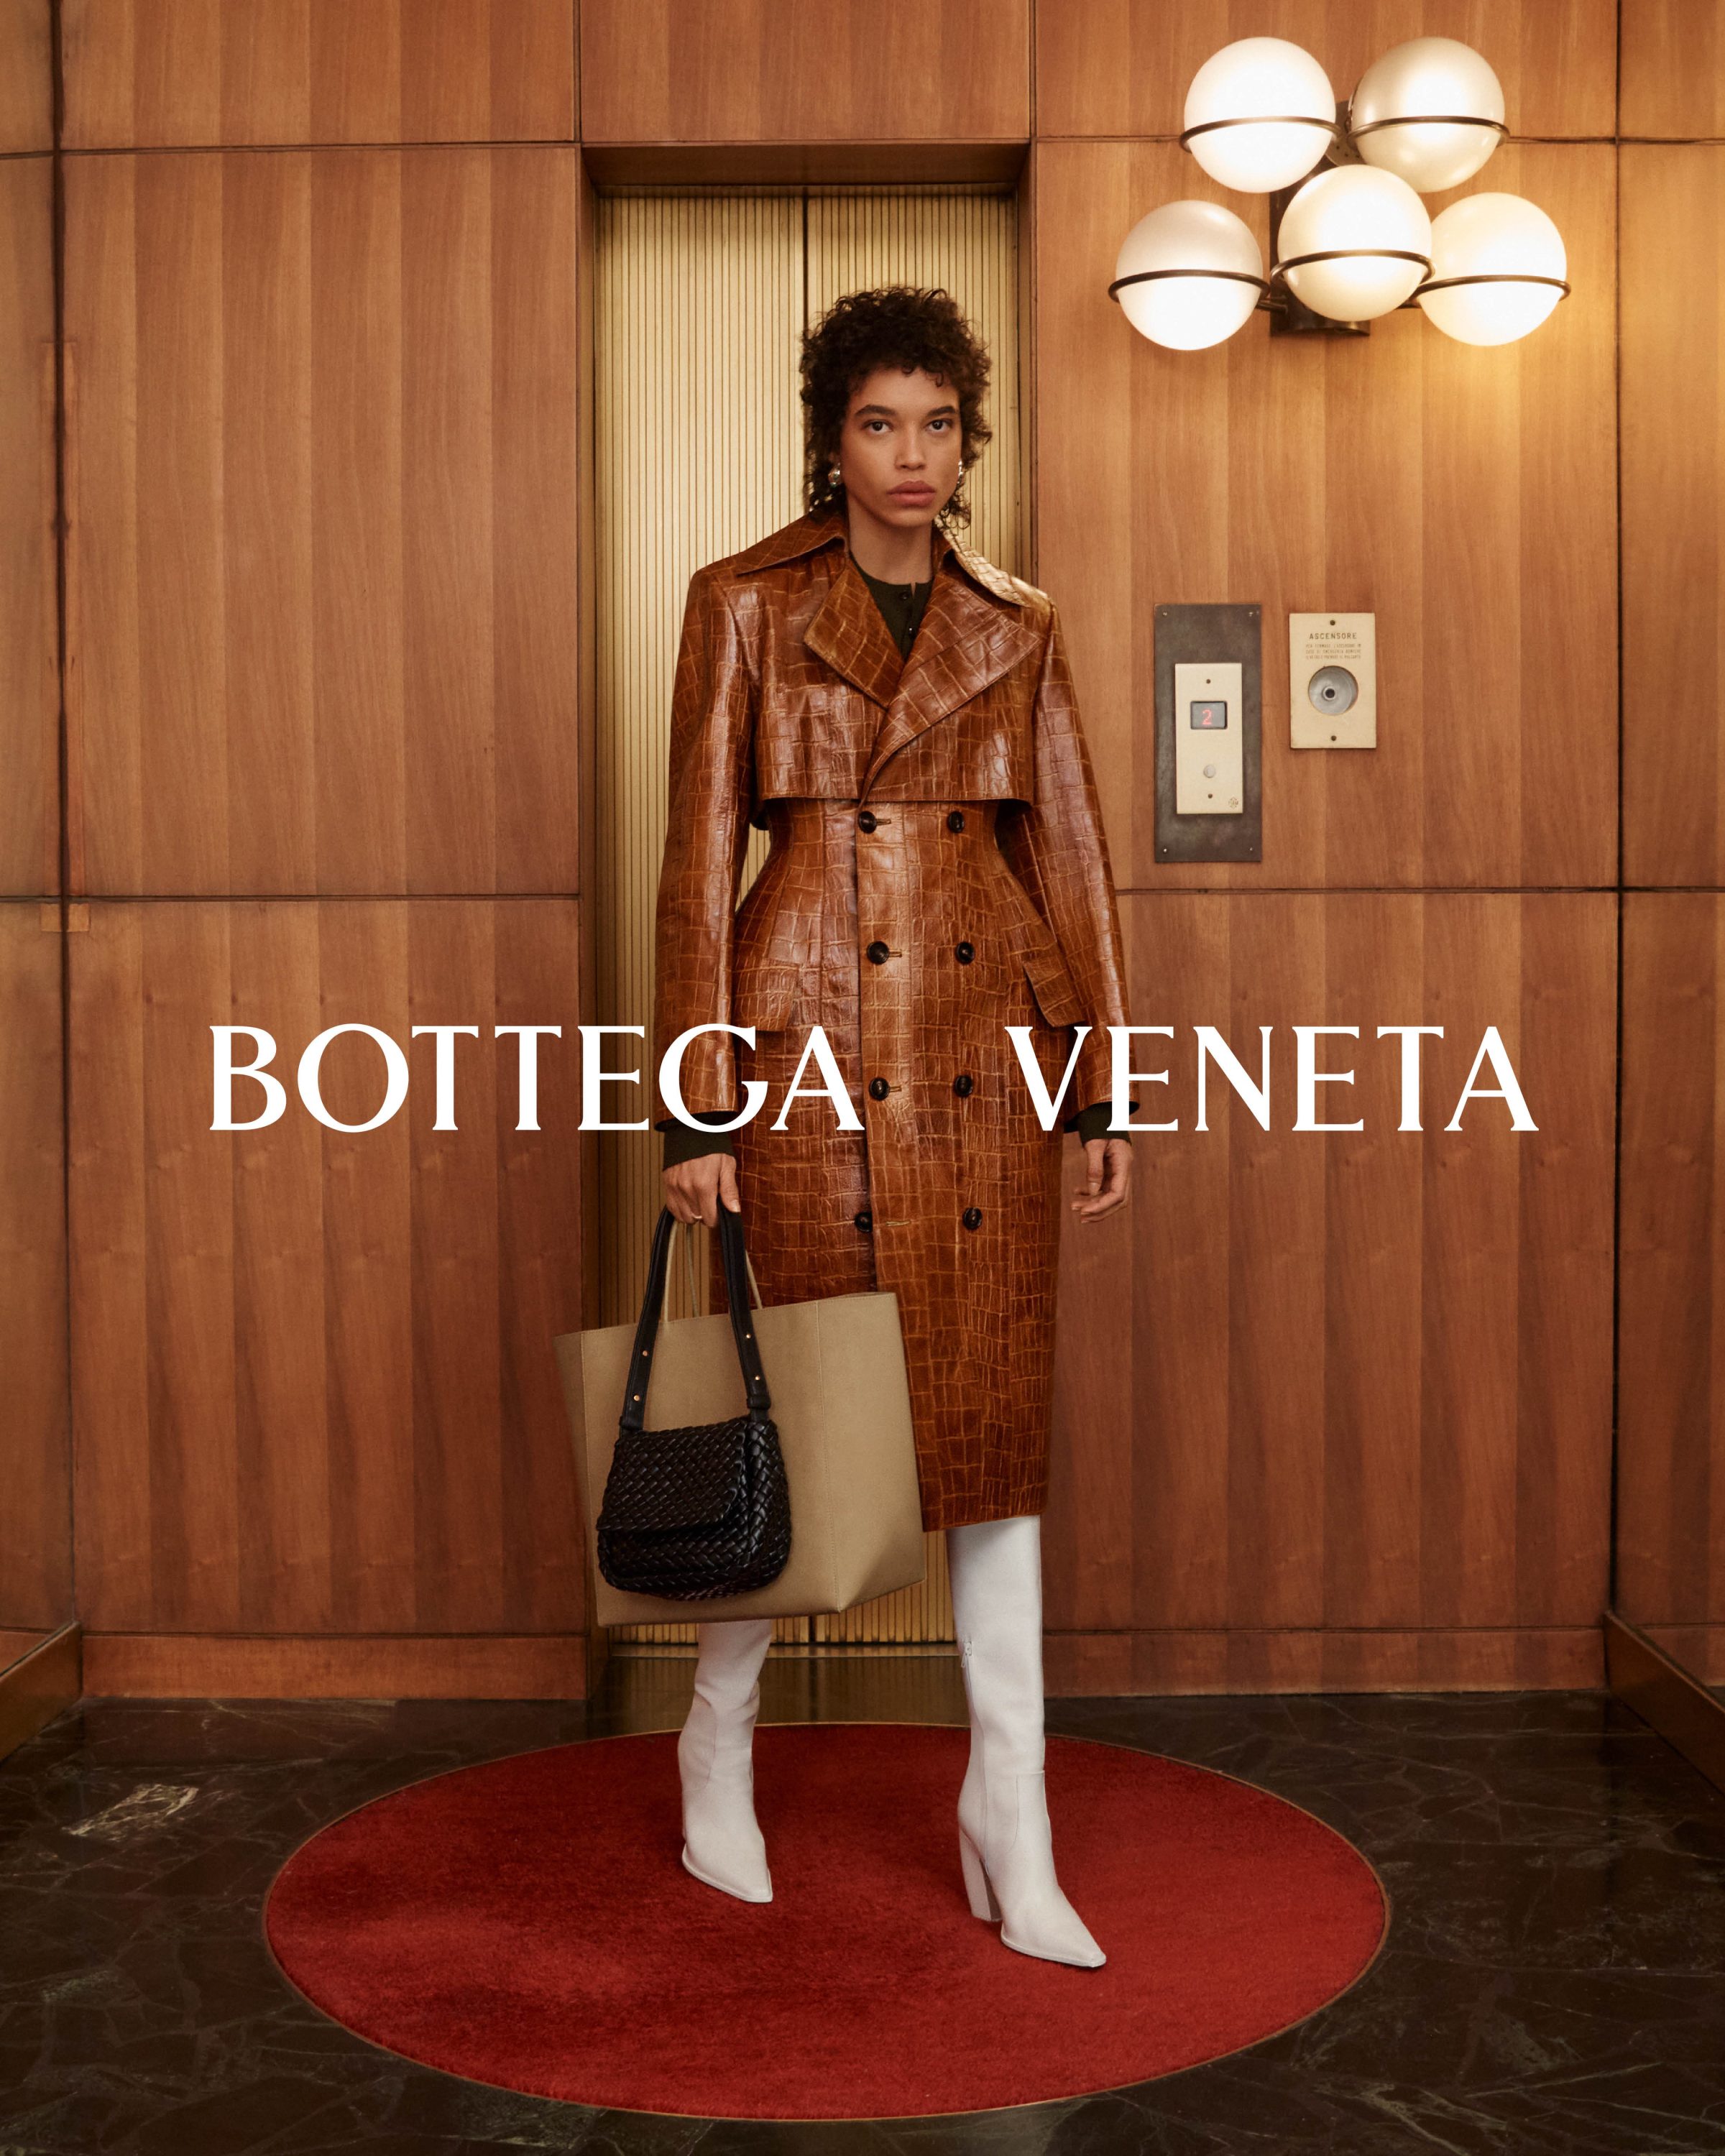 Bottega Veneta's Winter Campaign Makes The Ordinary Extradinaory